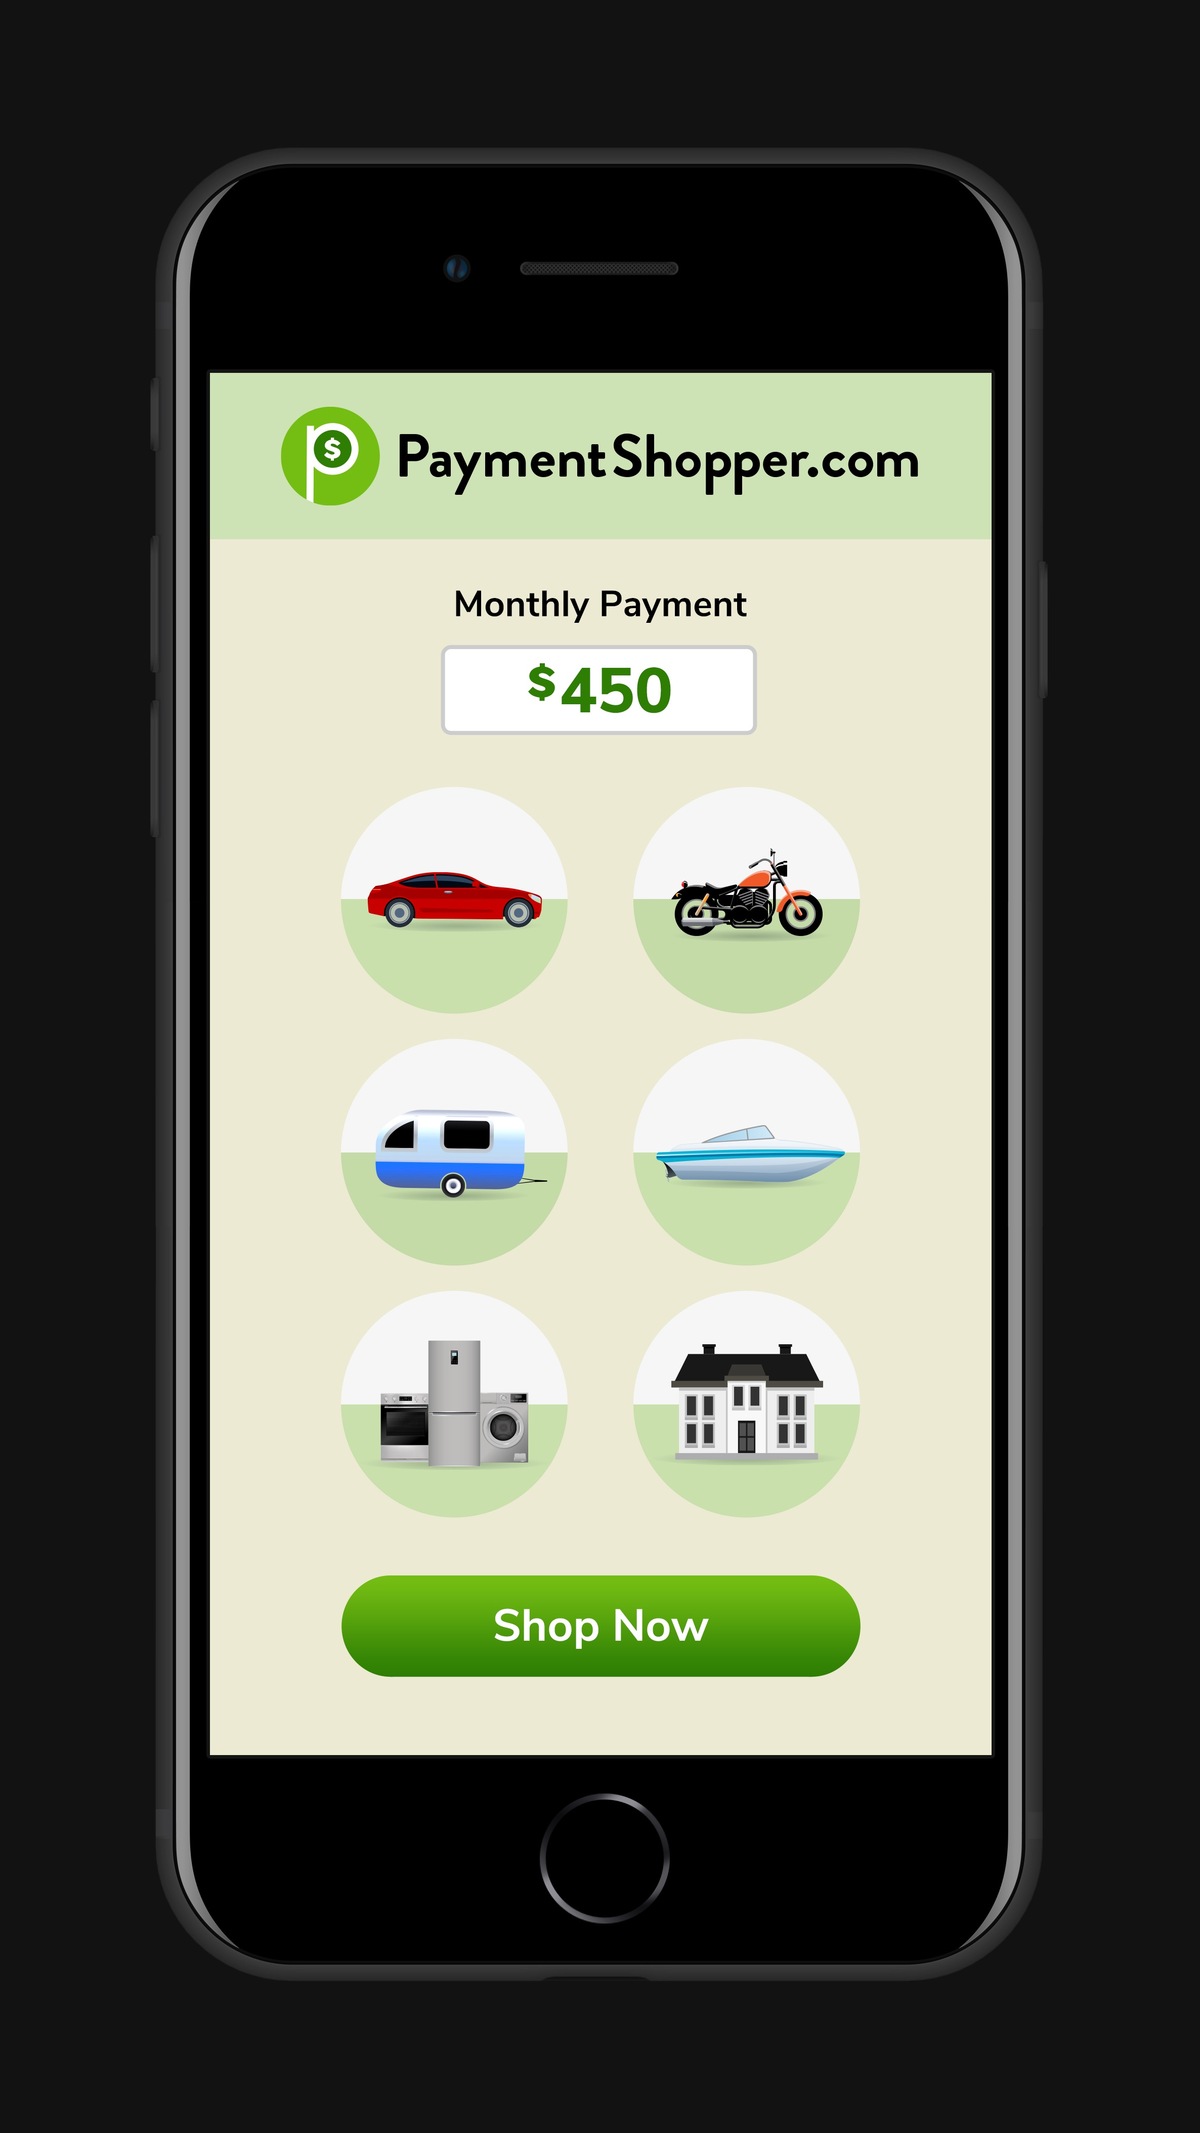 PaymentShopper app interface